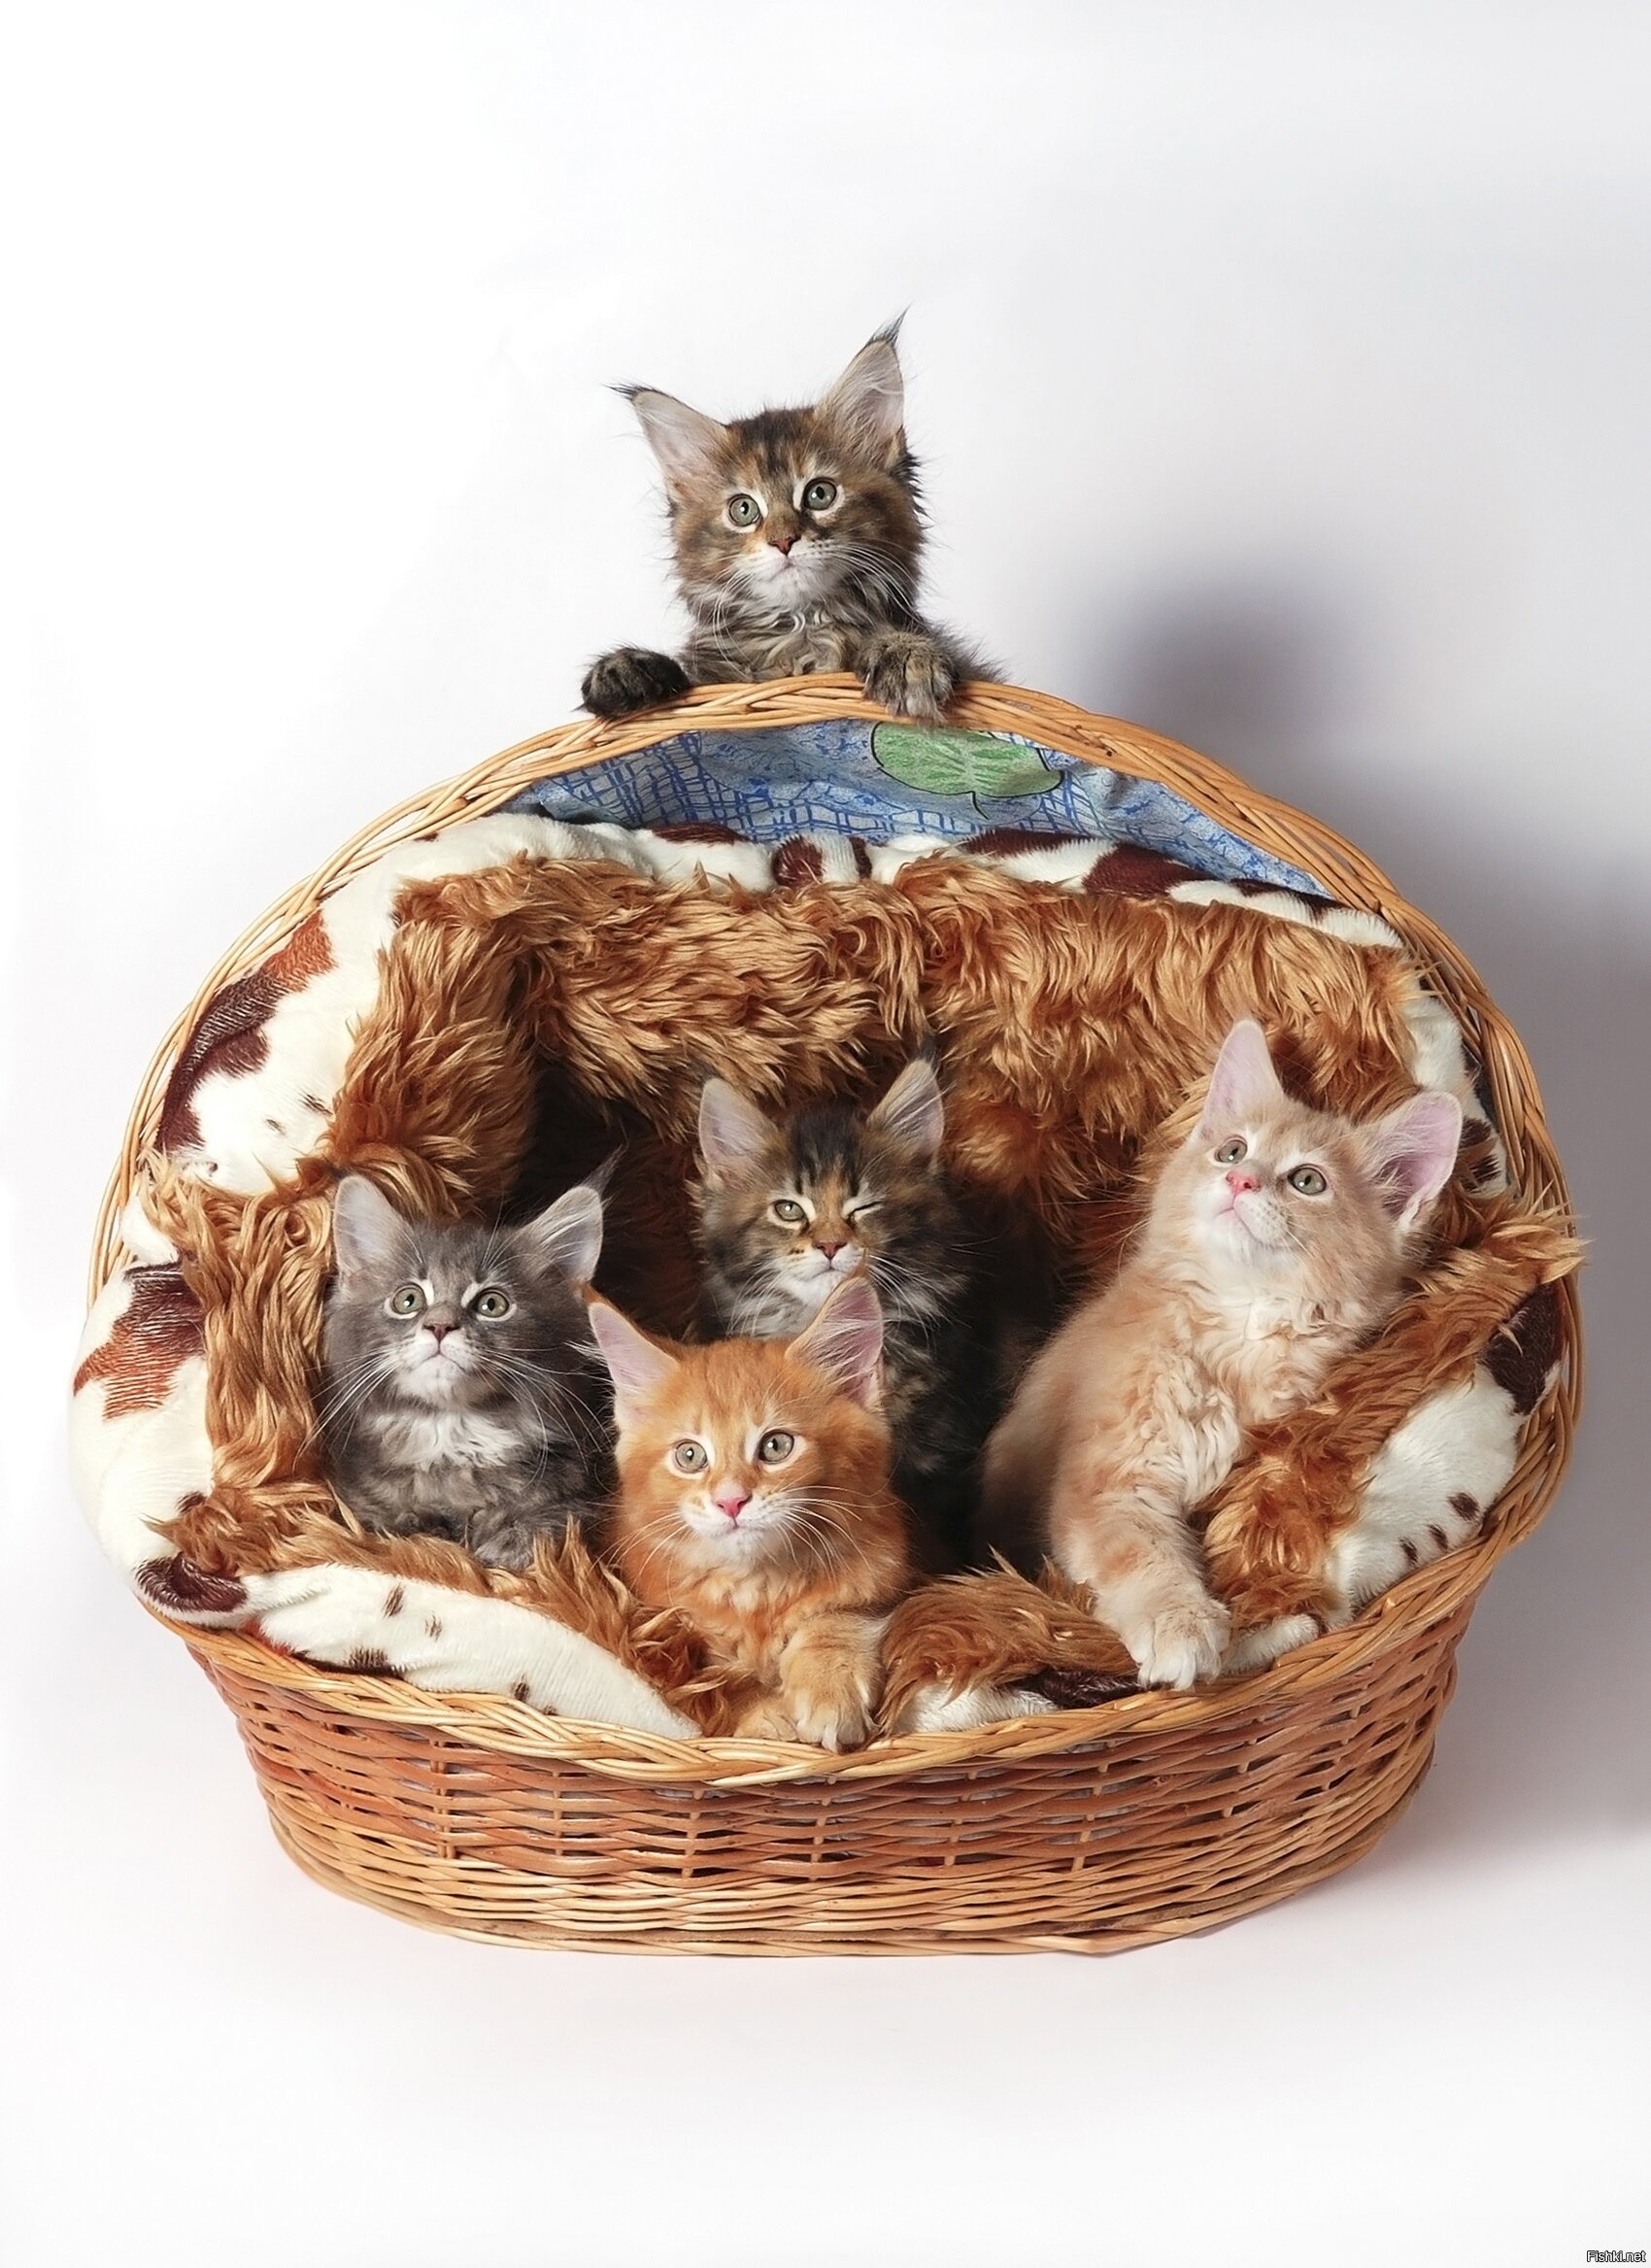 8 котят у кошки. Корзинка для кошки. Кошка в лукошке. Котята в корзинке. Котики в корзине.